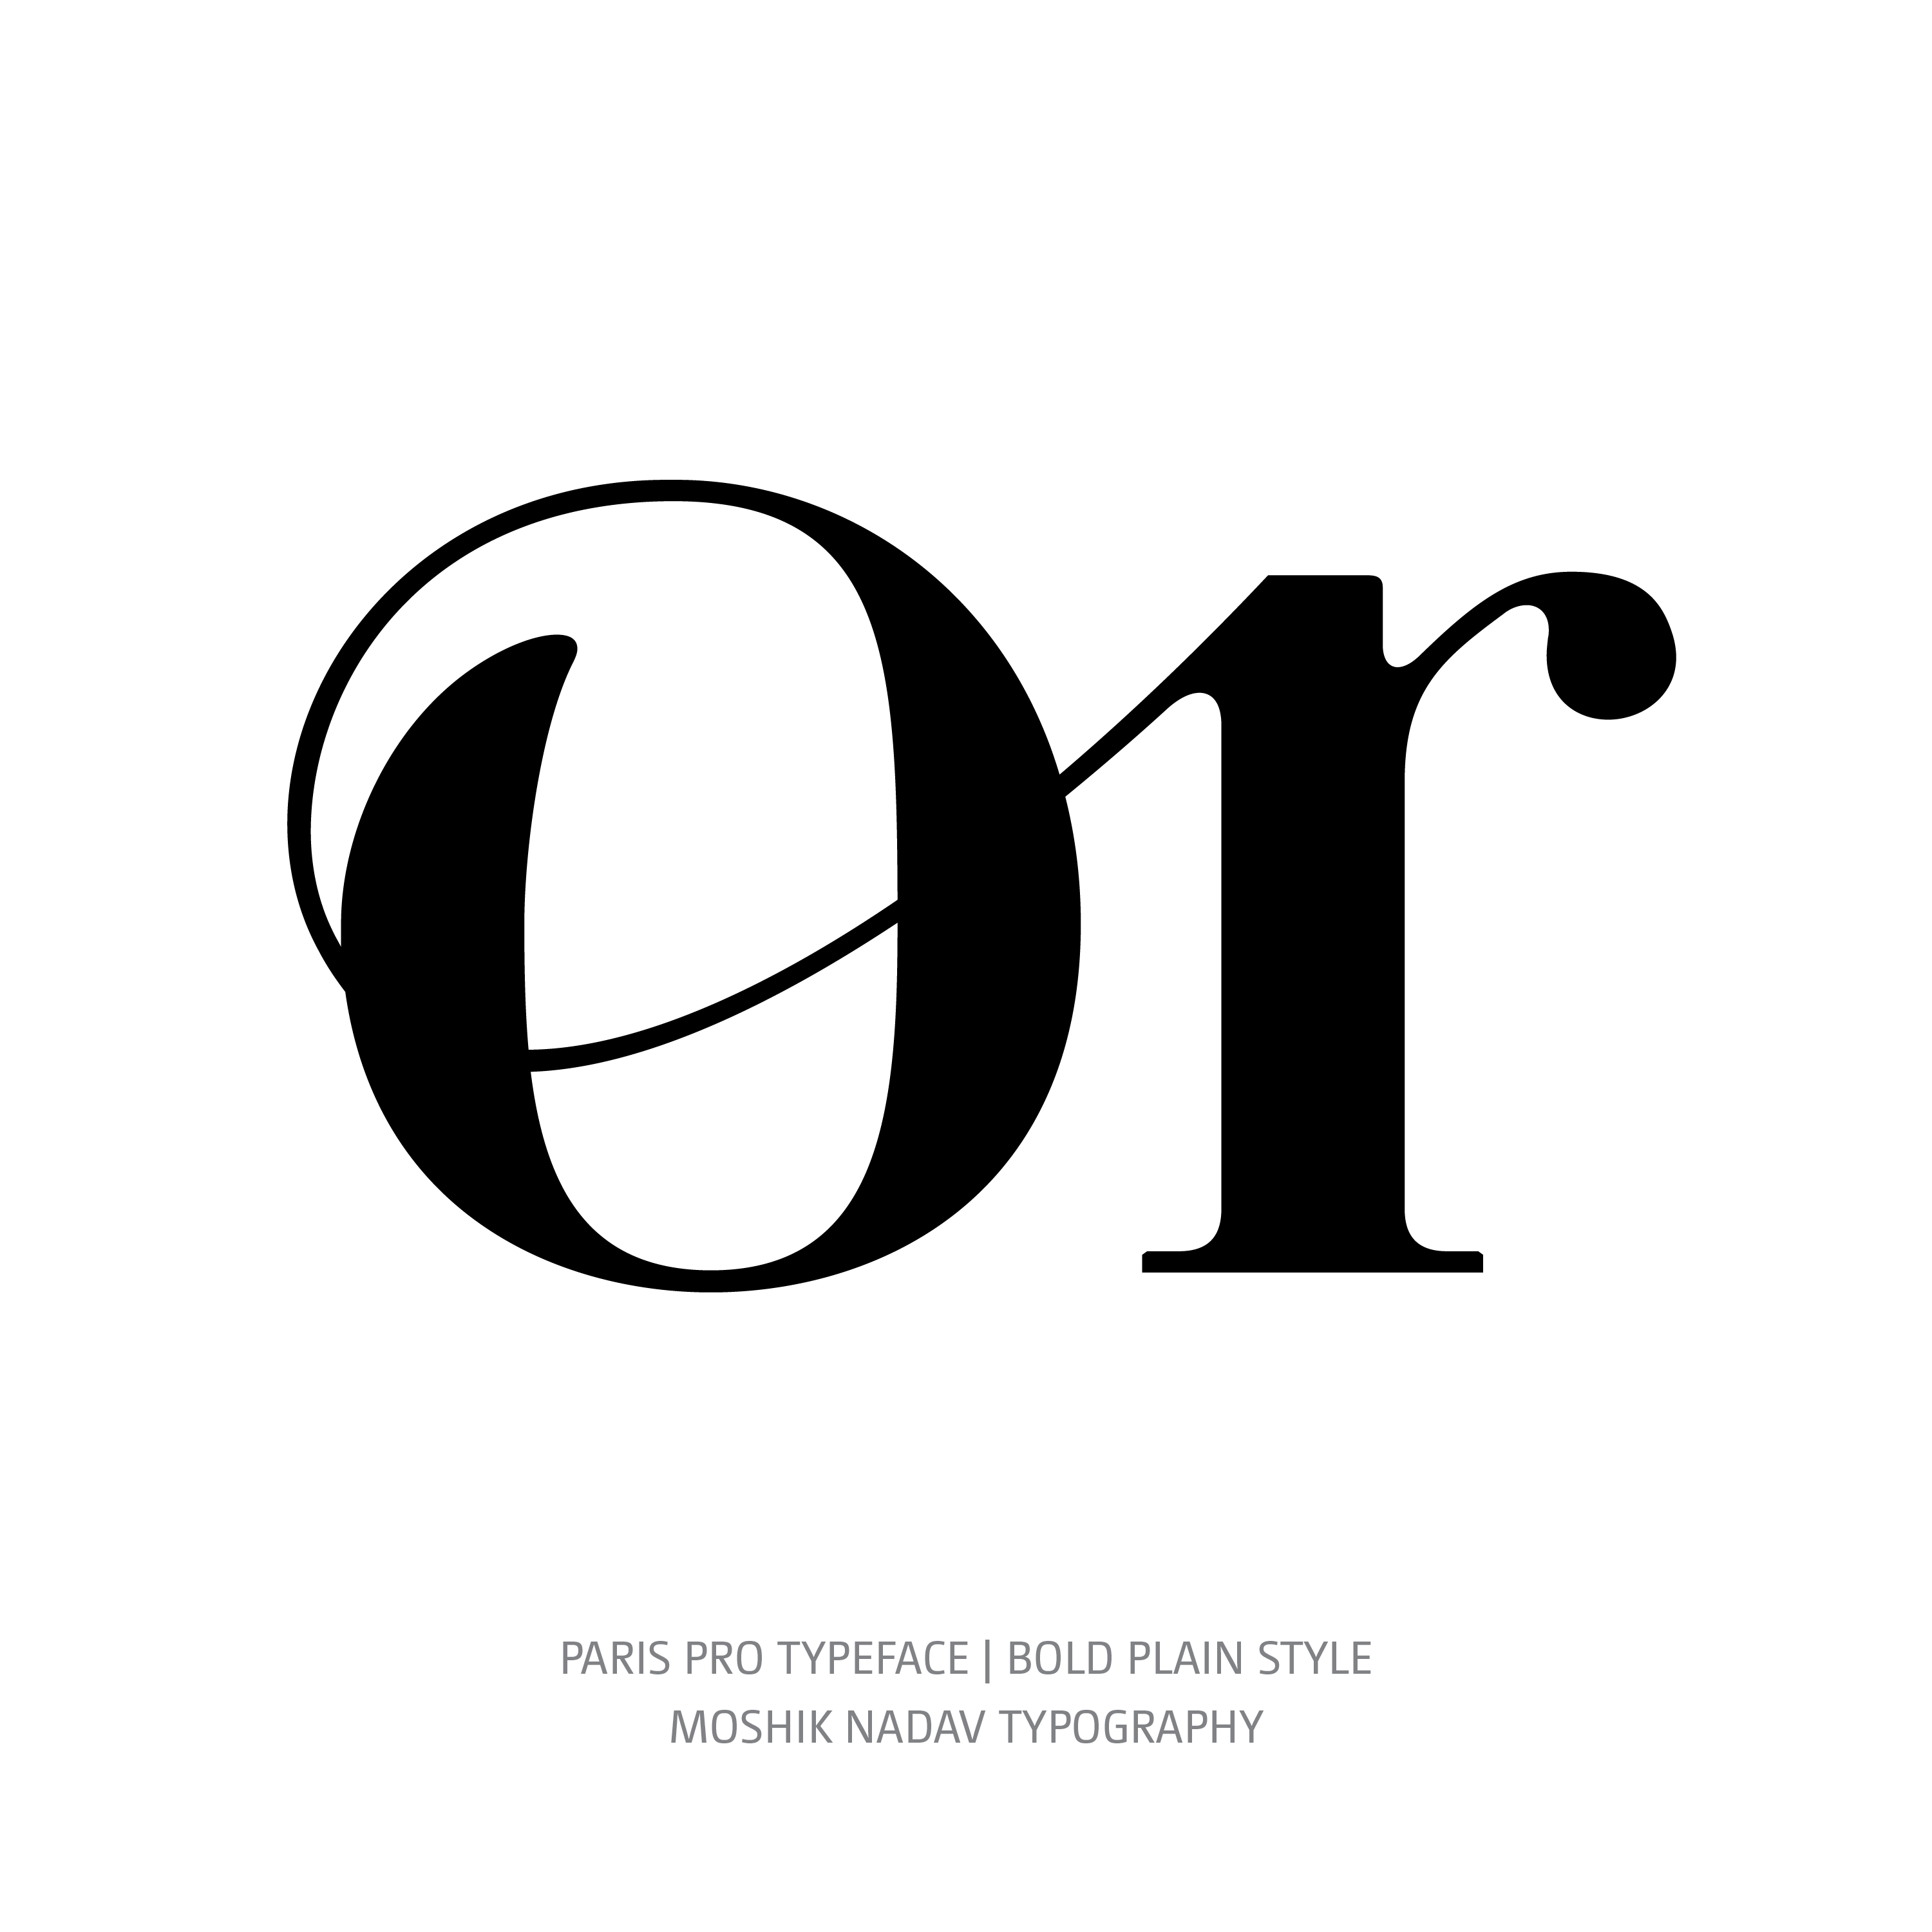 Paris Pro Typeface Bold or alt ligature